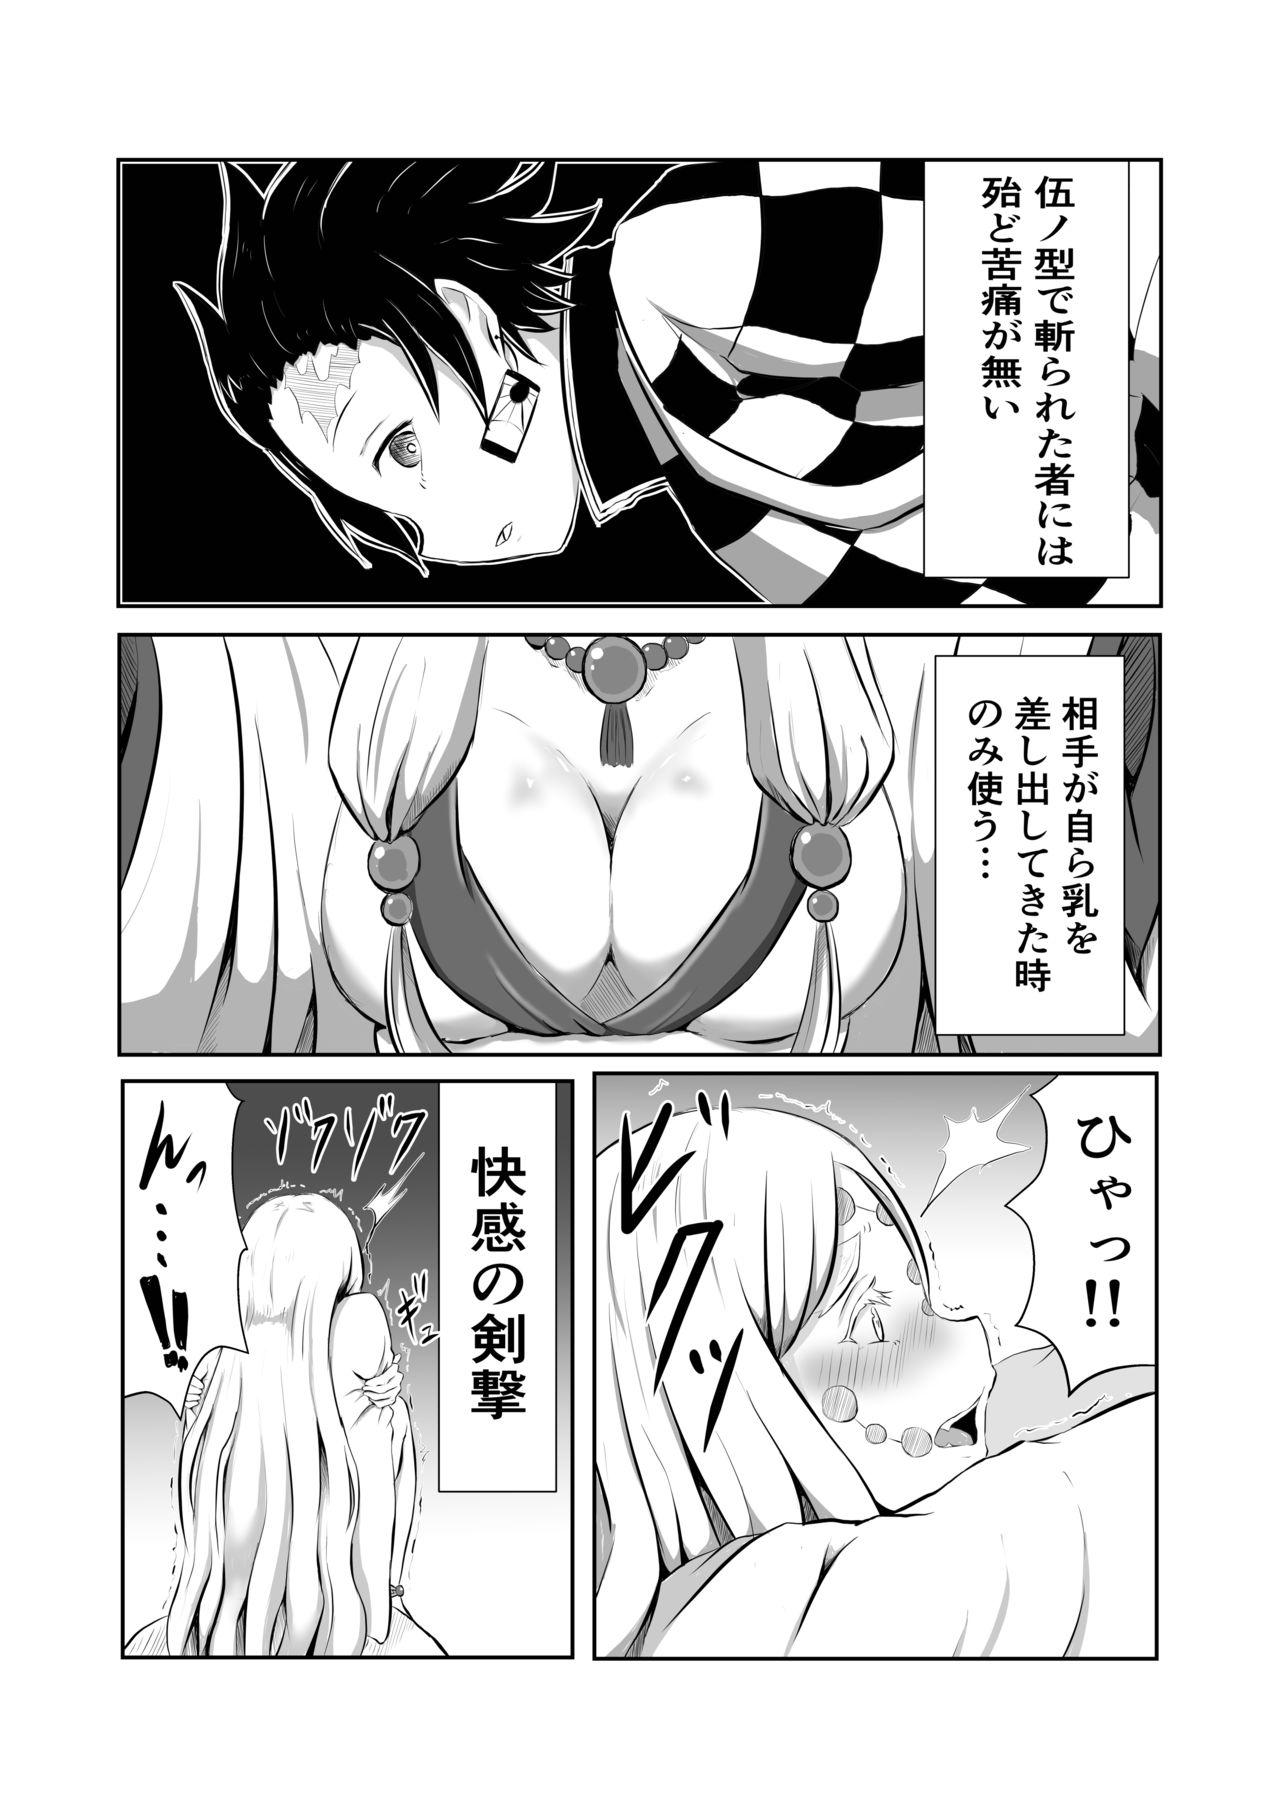 Anal Porn Hinokami Sex. - Kimetsu no yaiba | demon slayer Sharing - Page 4